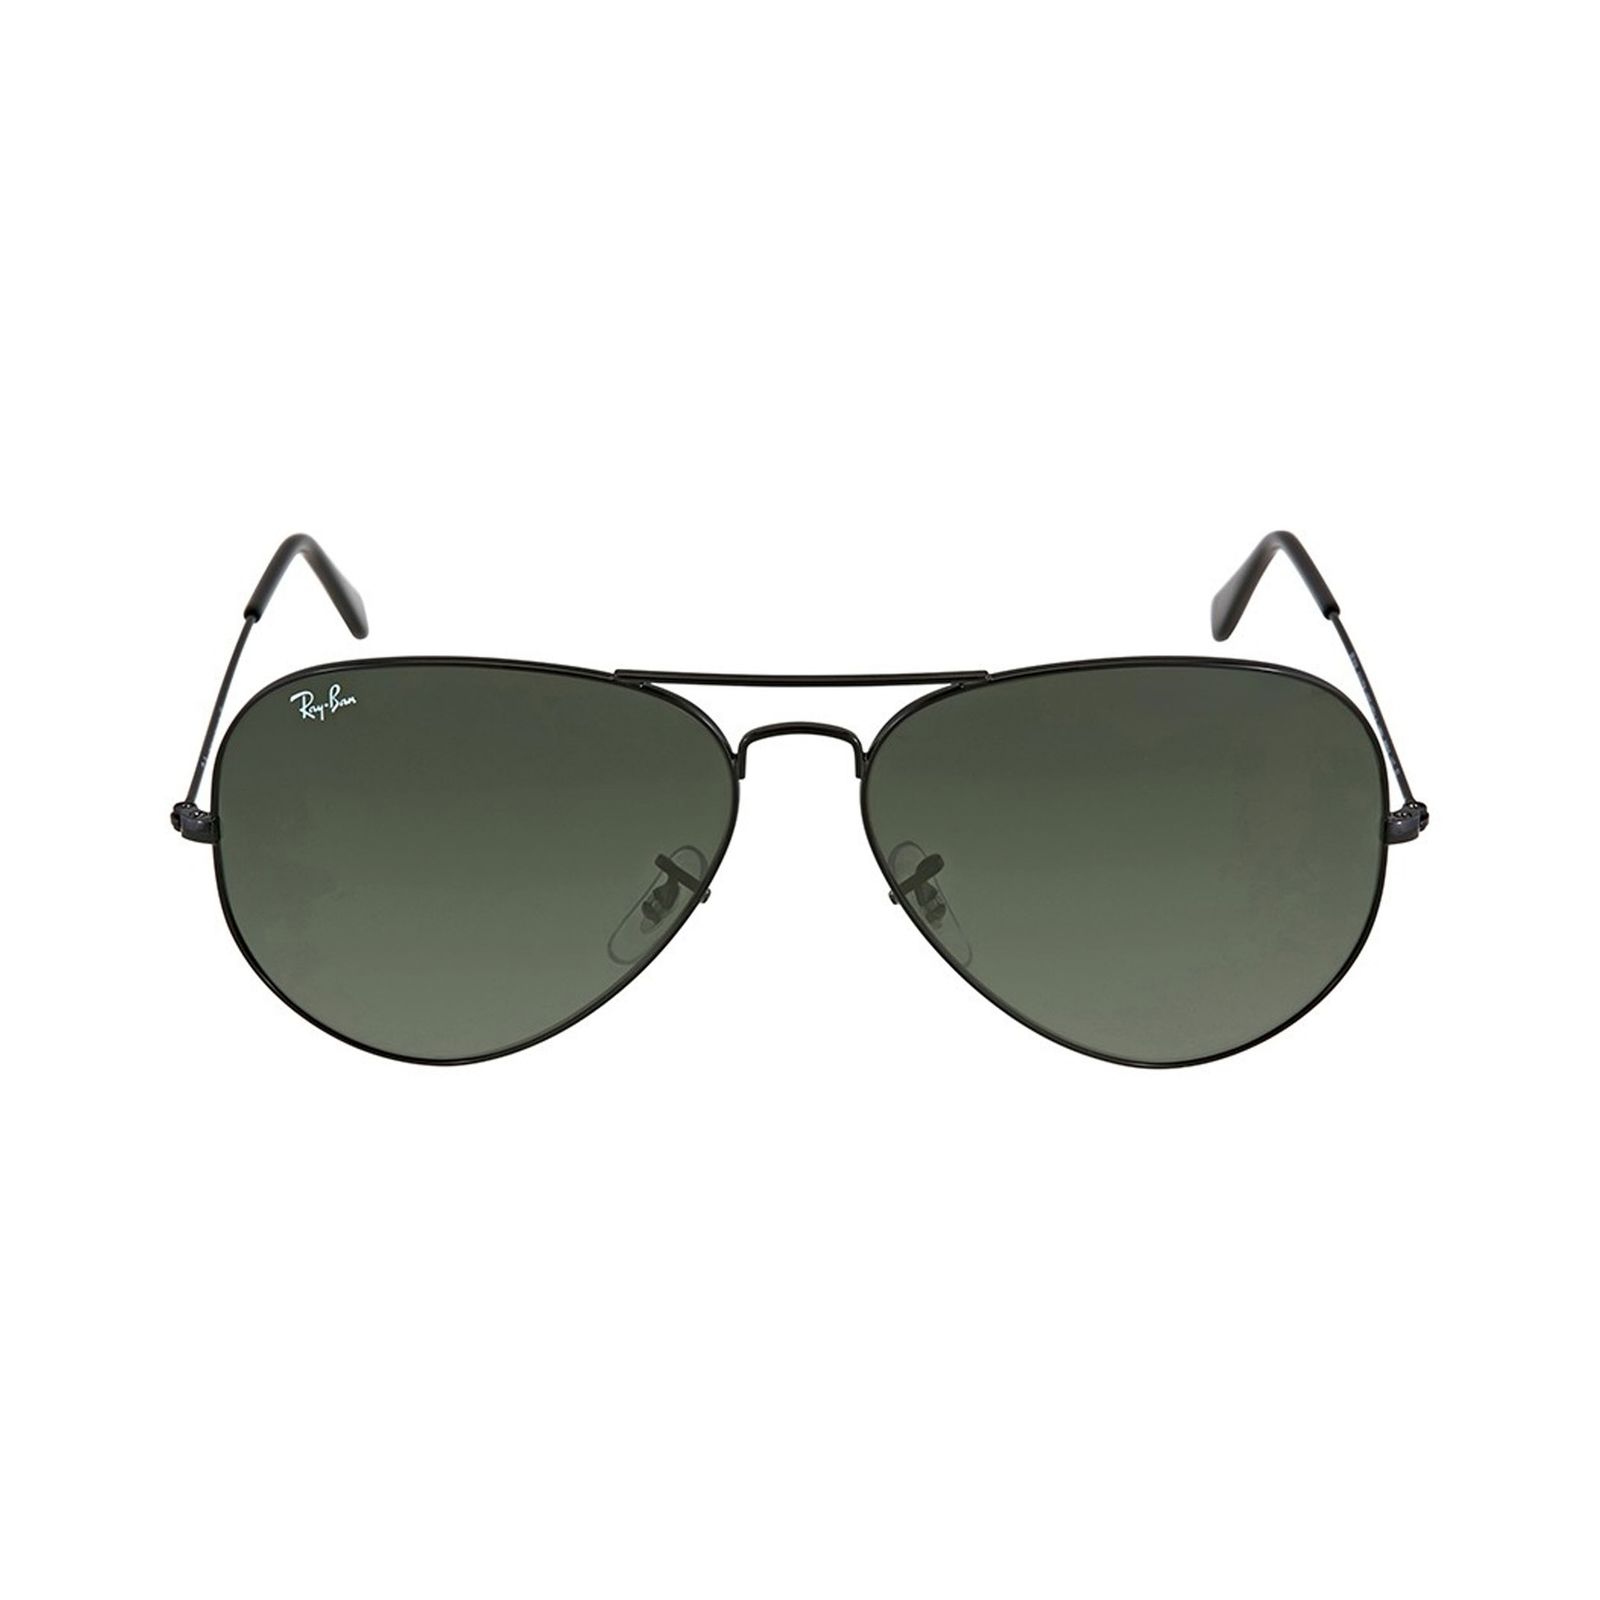 عینک آفتابی ری بن مدل 3026-l2821-62 - مشکی - 2